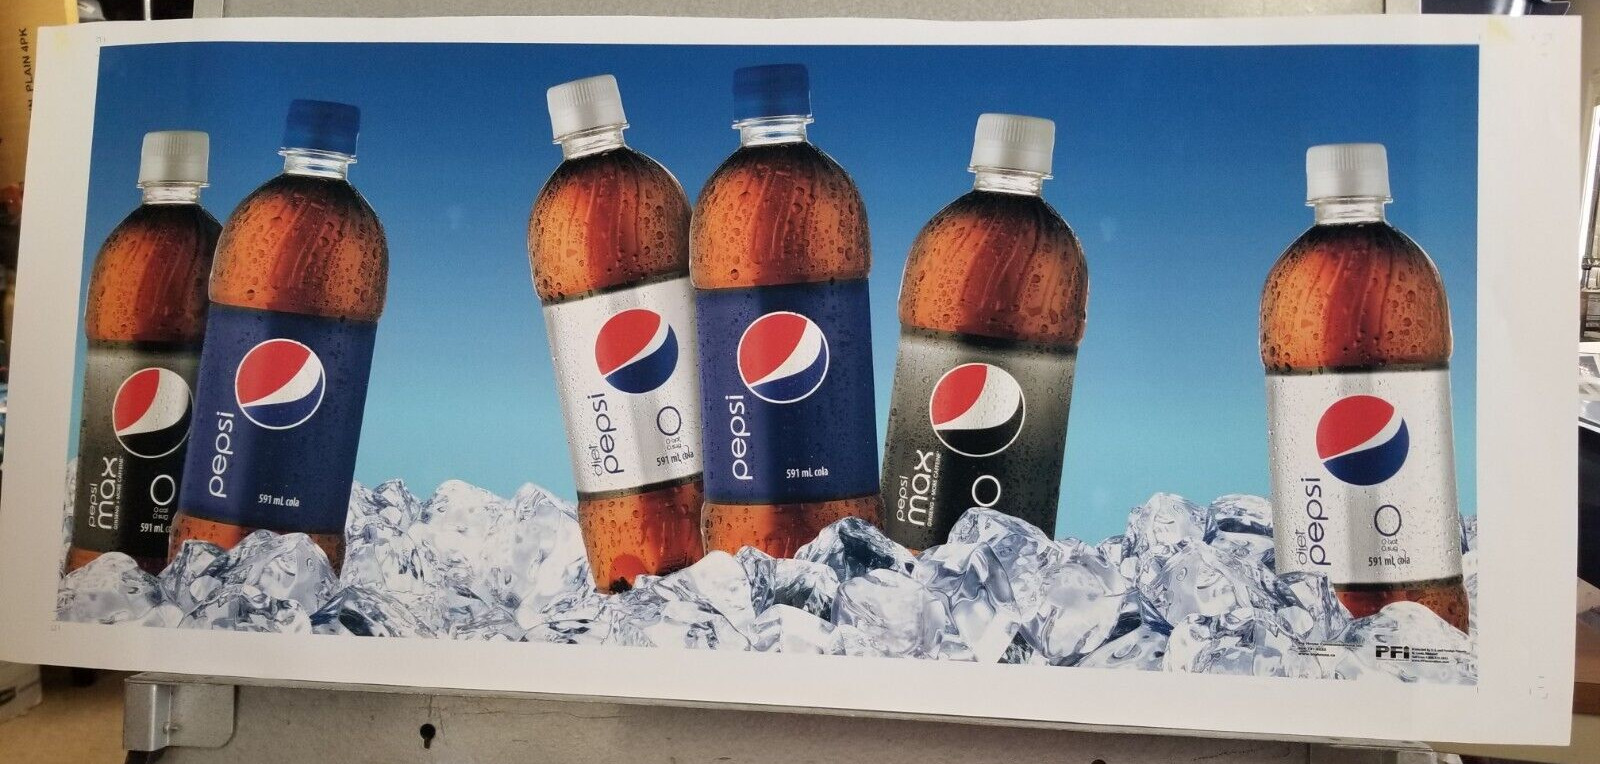 Pepsi Max Diet Pepsi Bottles on Ice Preproduction Advertising Art Work Family